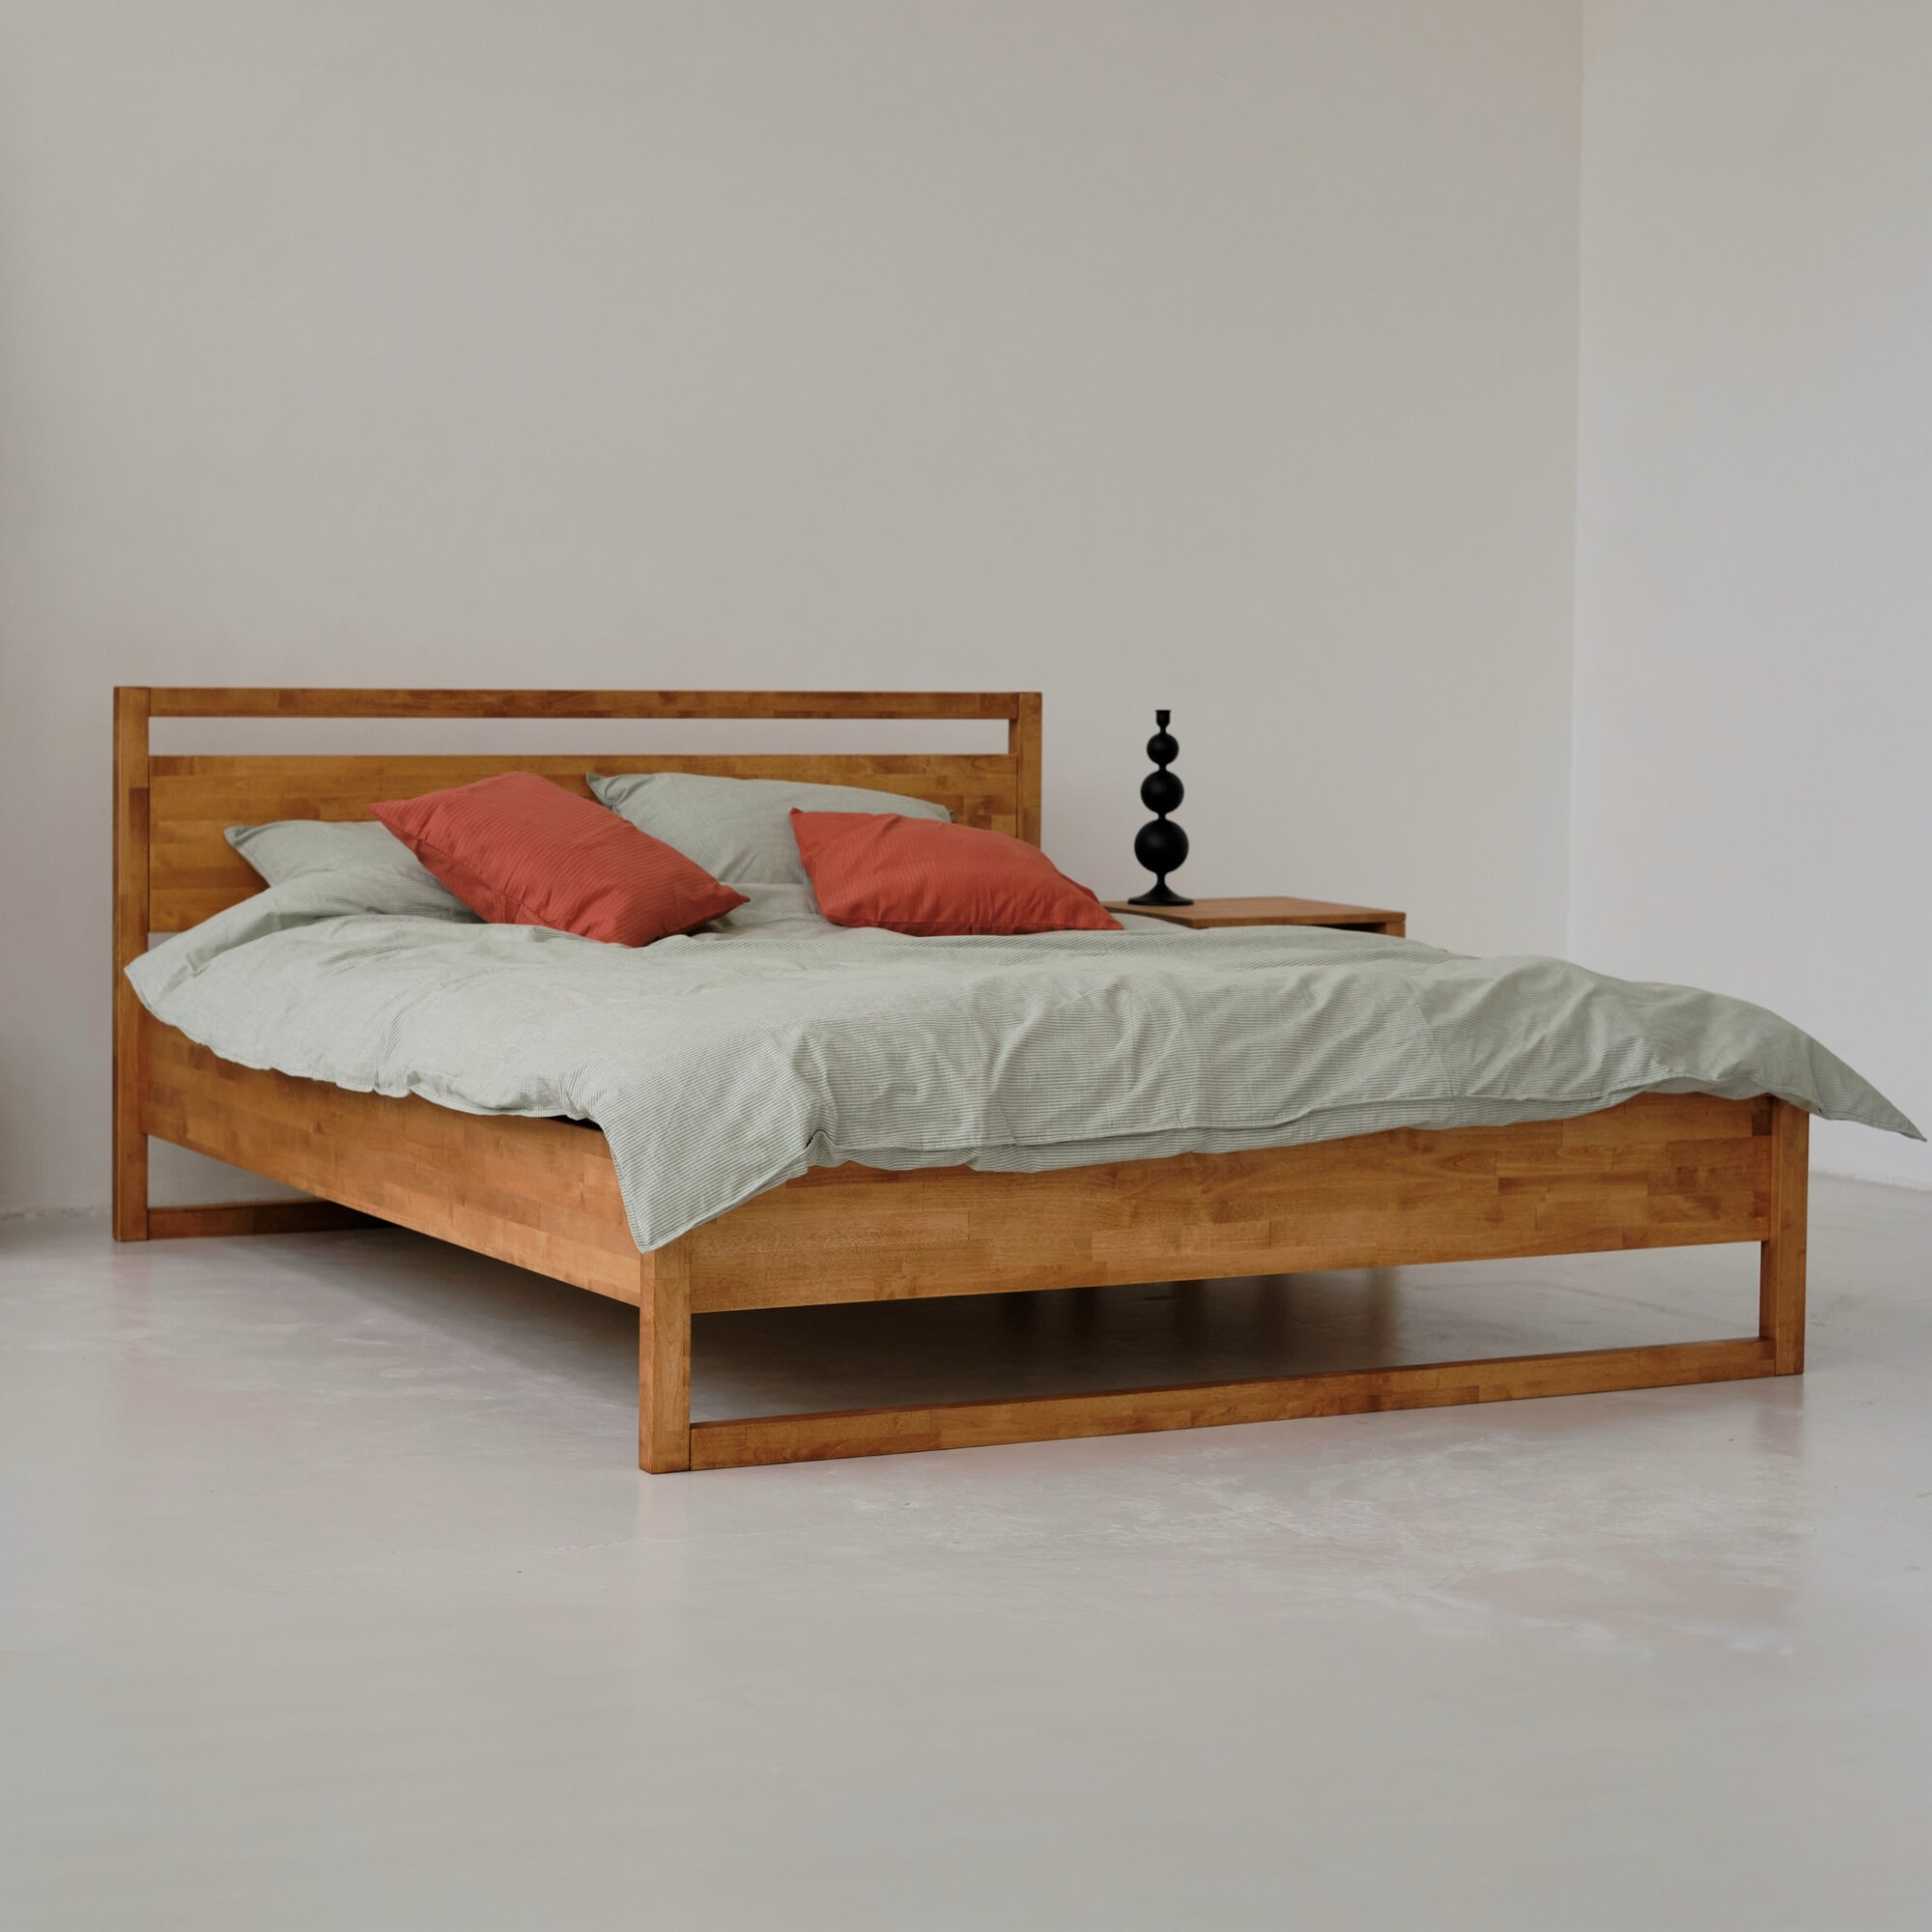 Кровать двуспальная деревянная Next 160х200 см, из массива березы, Равновесие